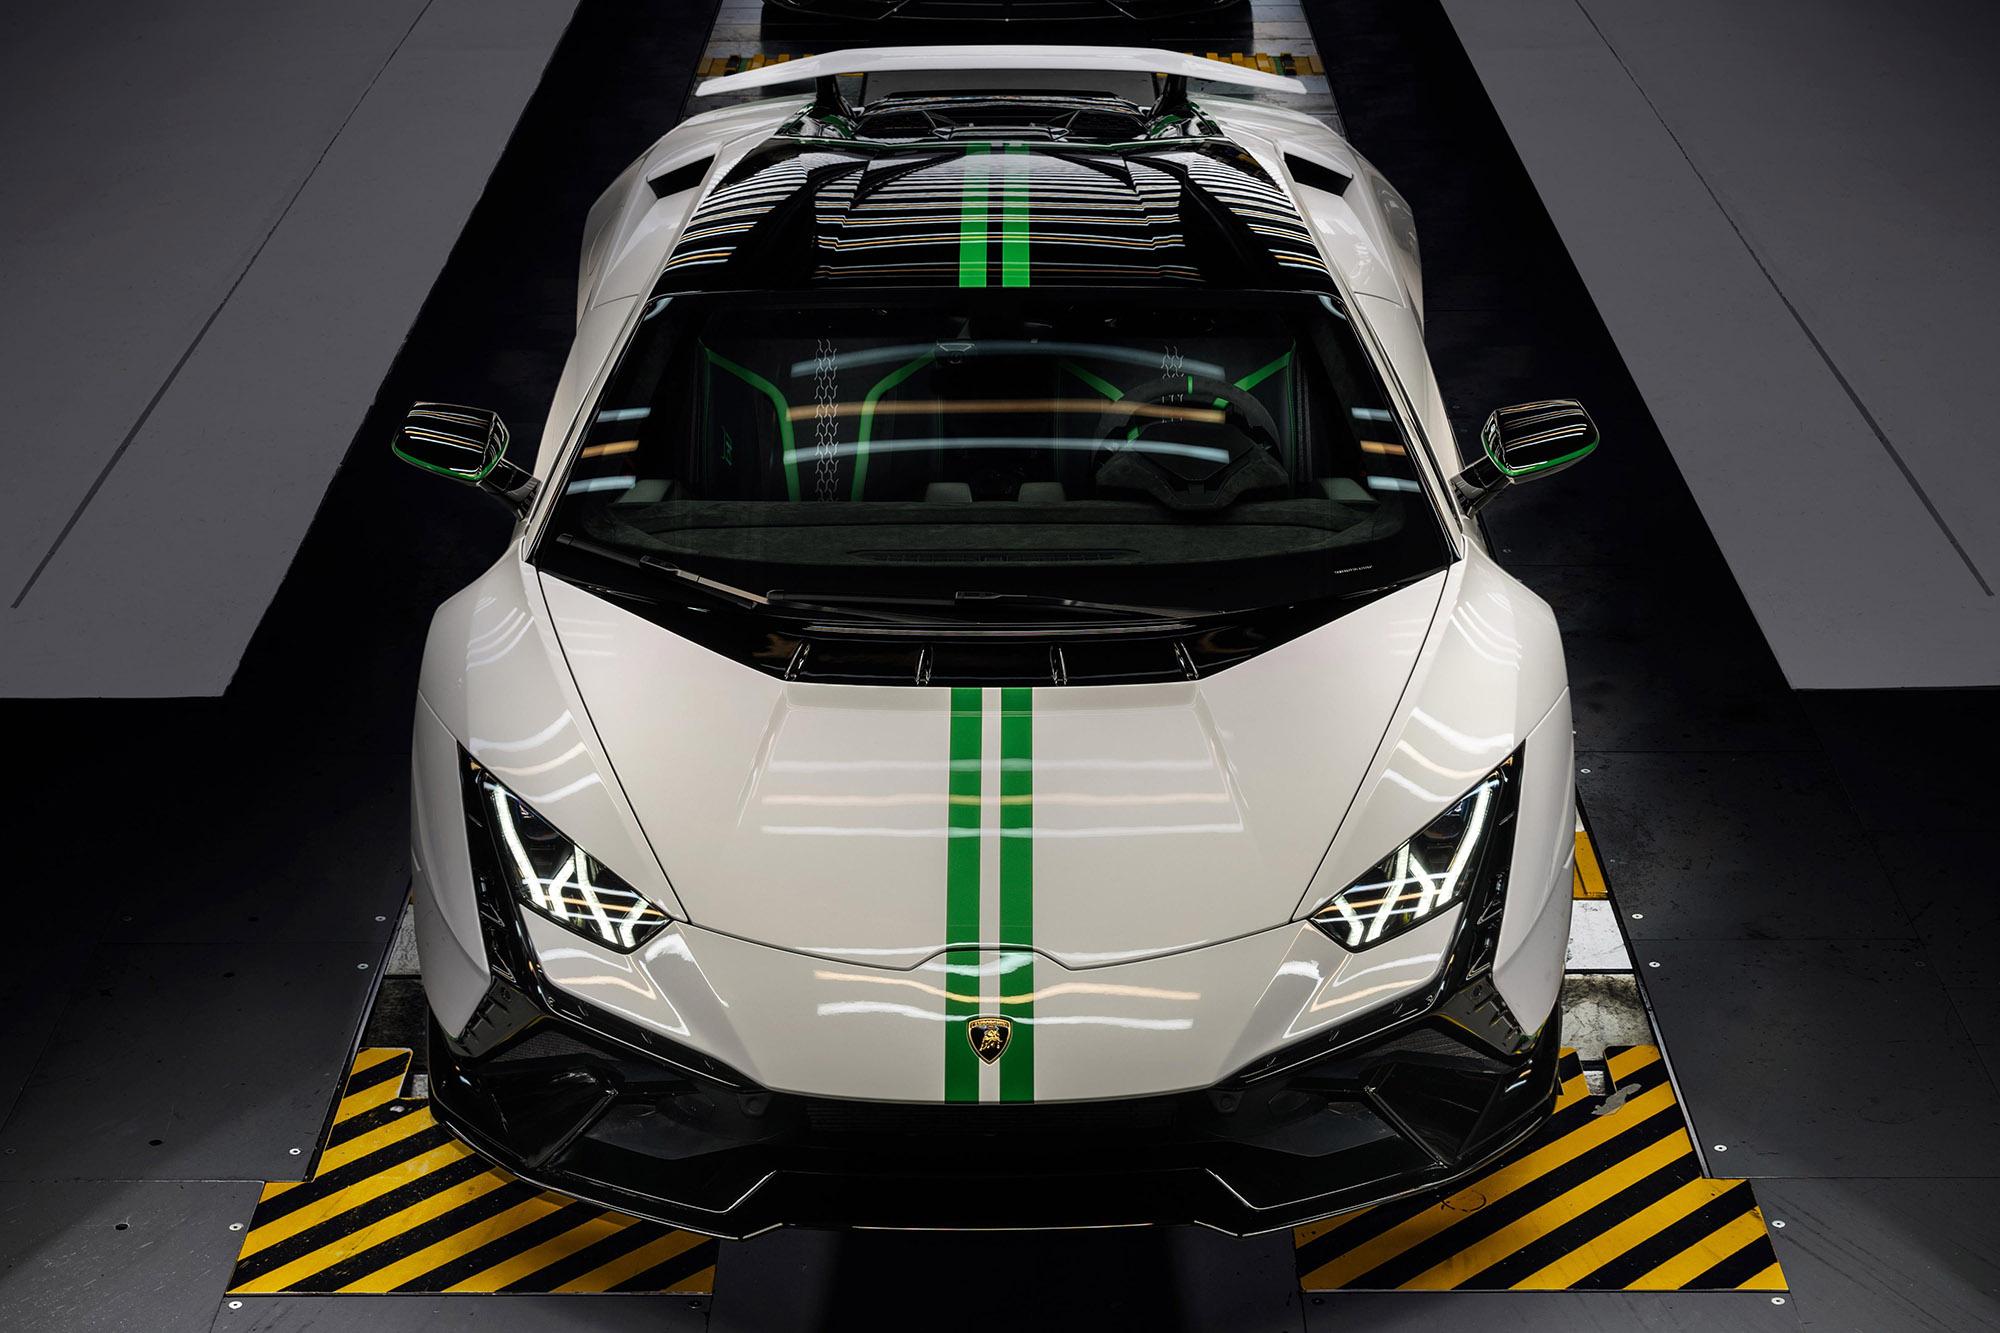 Η Lamborghini γιορτάζει την 60η επέτειό της με τρεις Huracan περιορισμένης παραγωγής